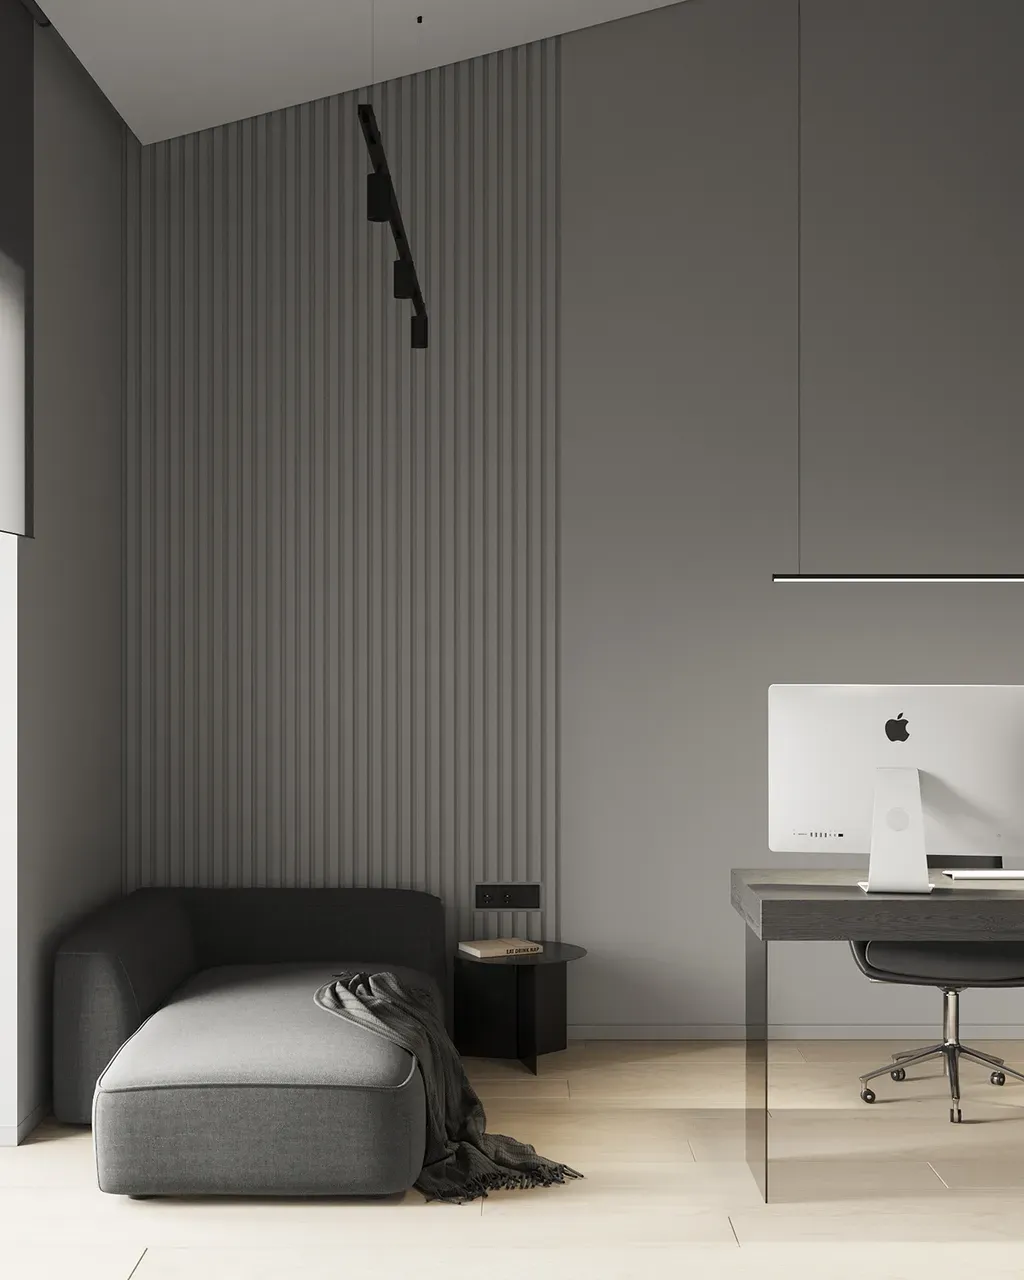 Phòng ngủ - Concept thiết kế 3D căn hộ - Phong cách Minimalism số 1  | Space T